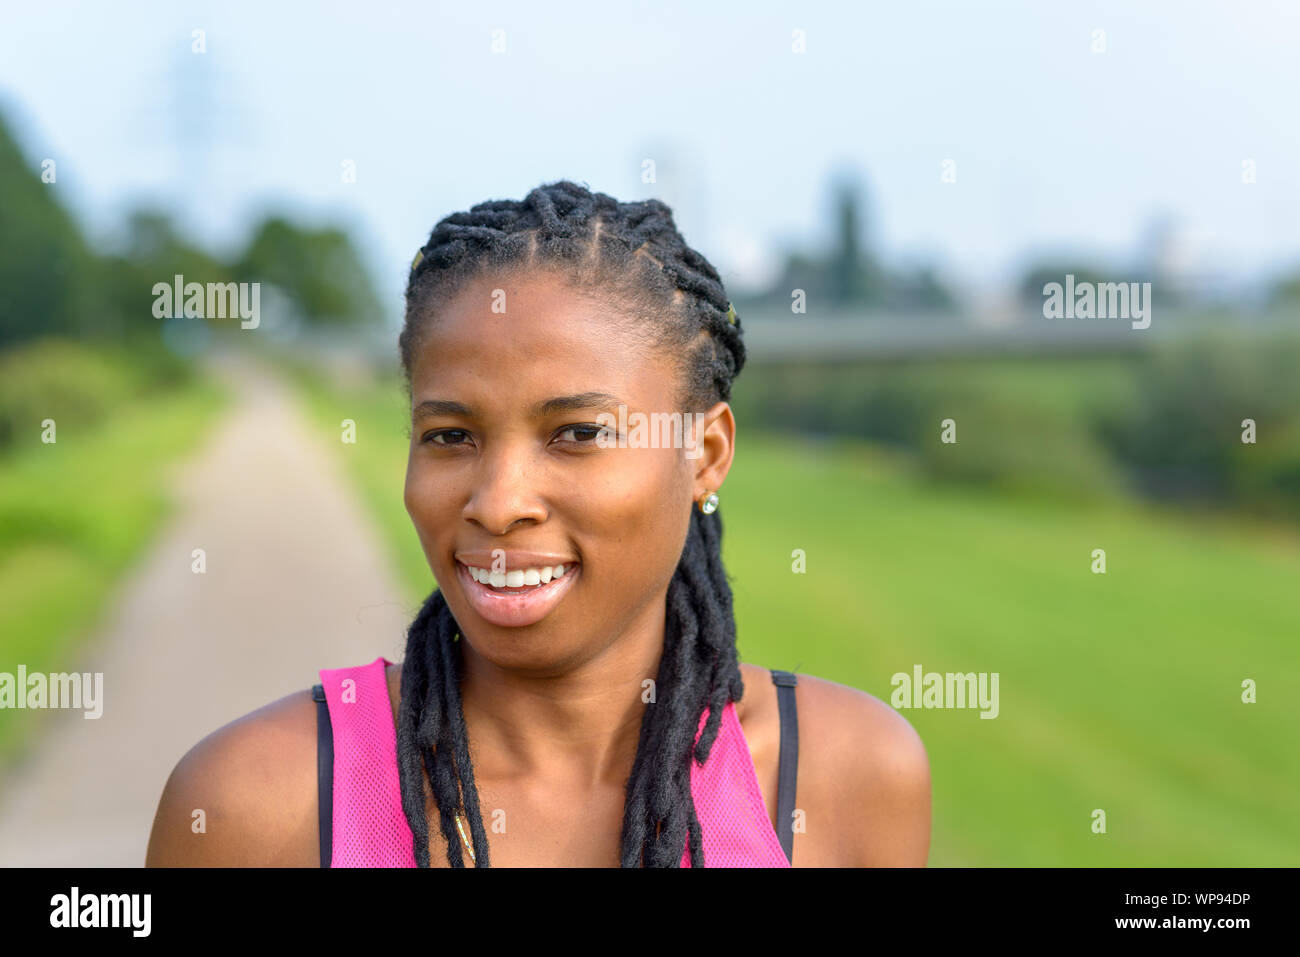 Felice giovane donna africana intrecciata con le estensioni di capelli svolta a guardare la fotocamera Foto Stock